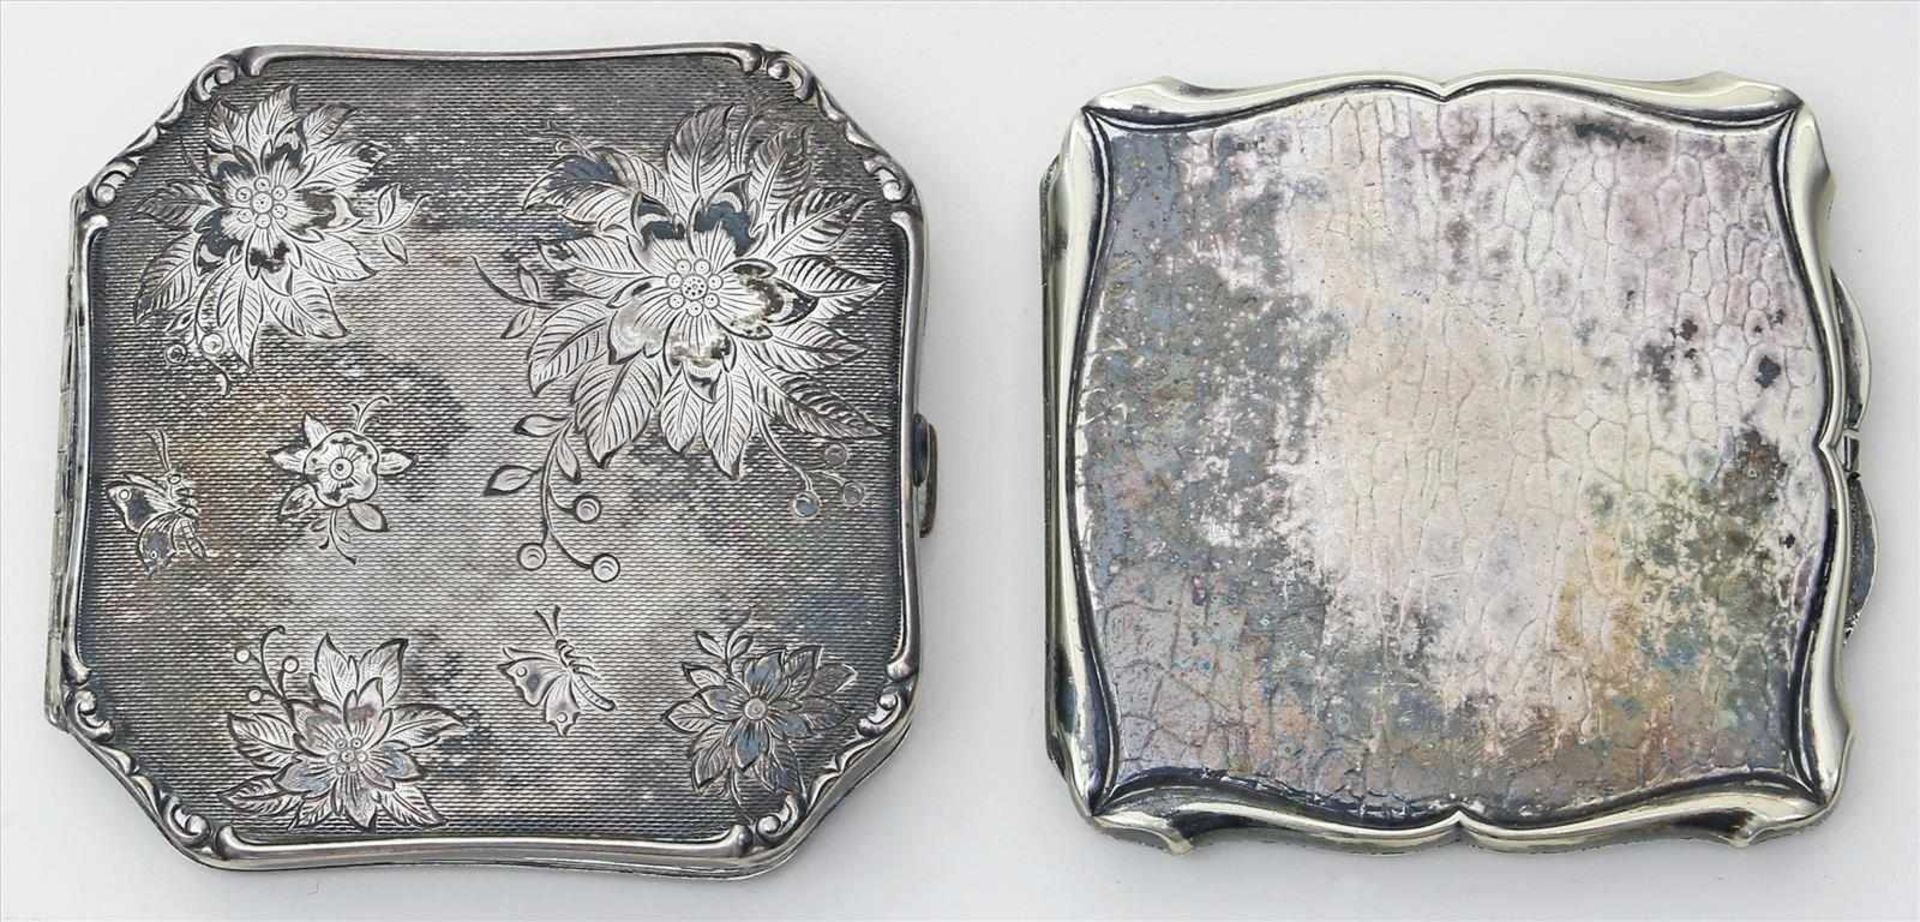 2 Puderdosen.Silber (1x 835/000), brutto 213 g. Guillochiertes bzw. ziseliertes Dekor. Innen je